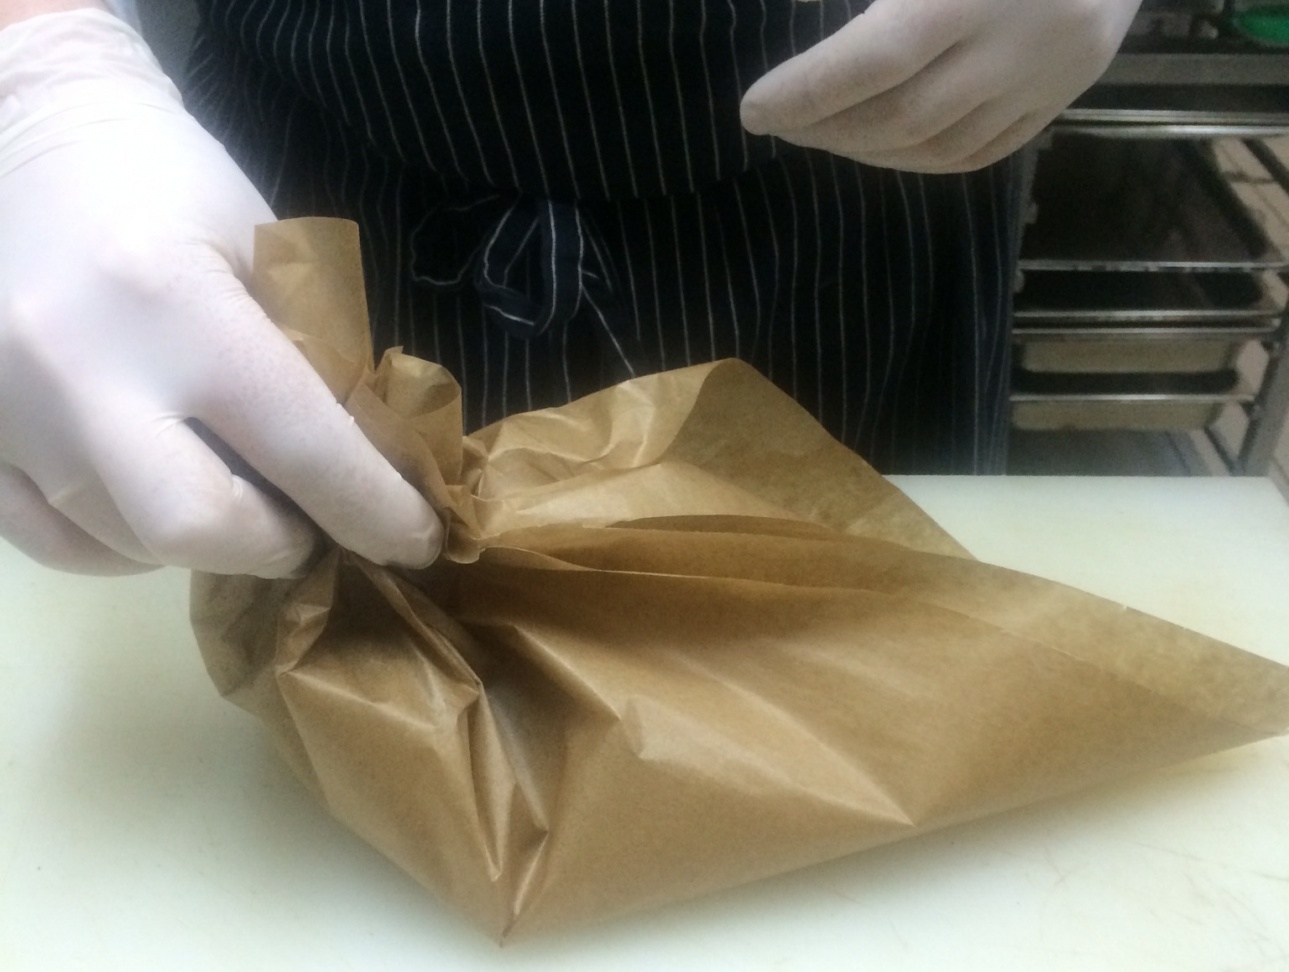 Лосось, приготовленный в пергаменте, от шеф-повара ресторана James Cook - фотография № 12